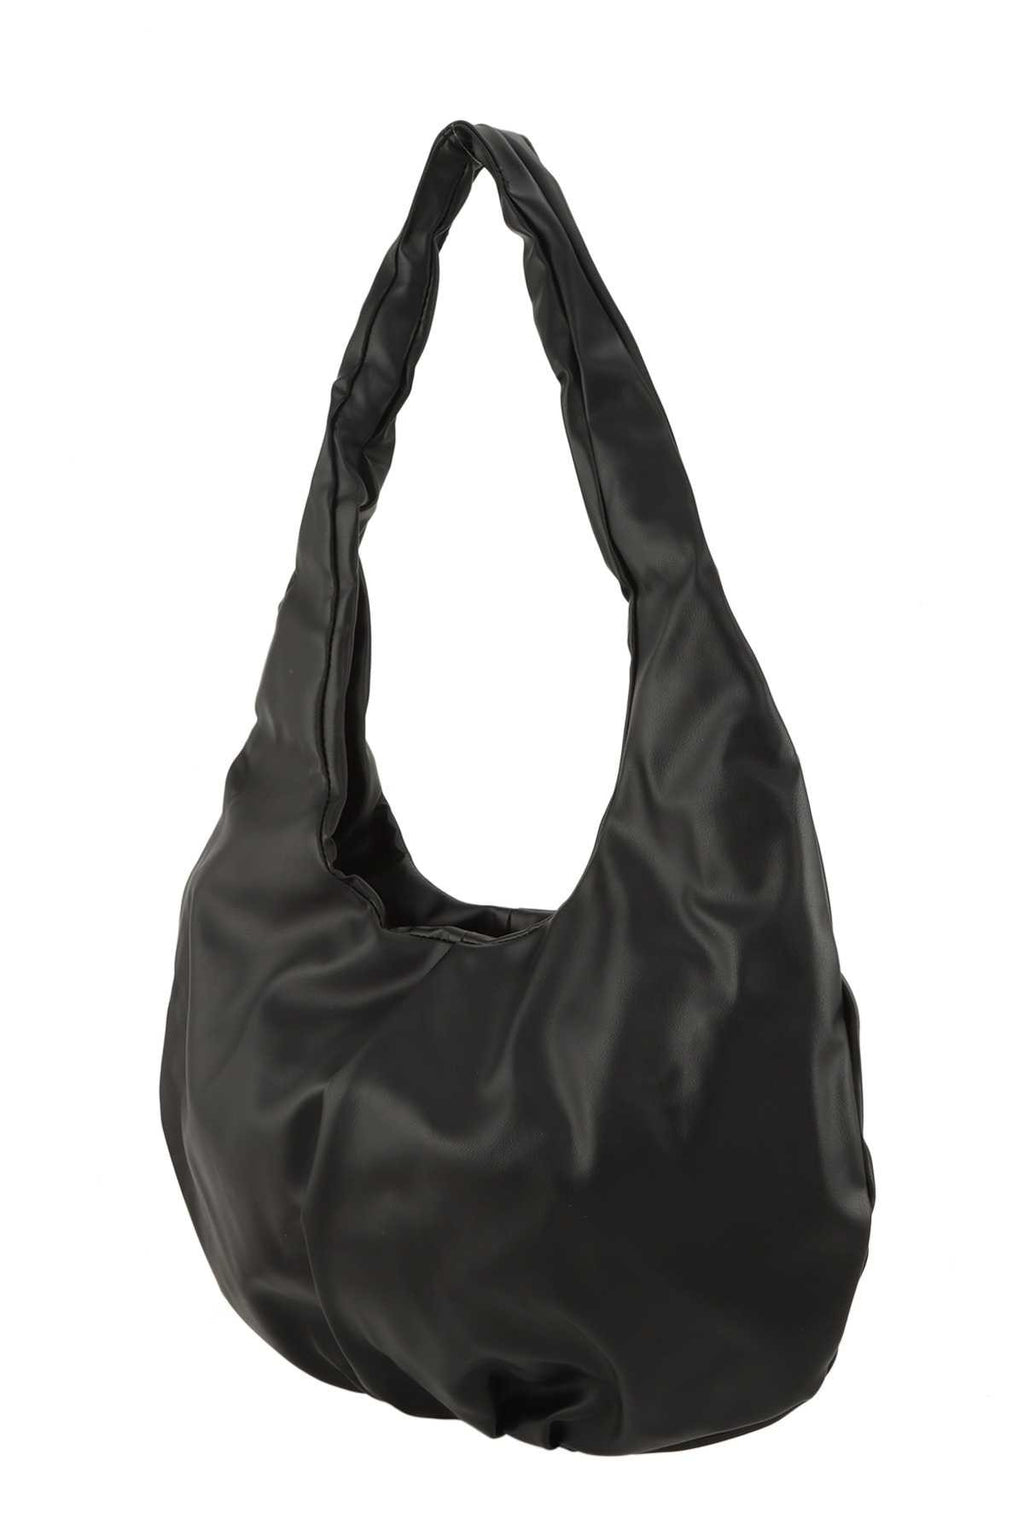 *Black Dumpling Shape Shoulder Hobo Bag